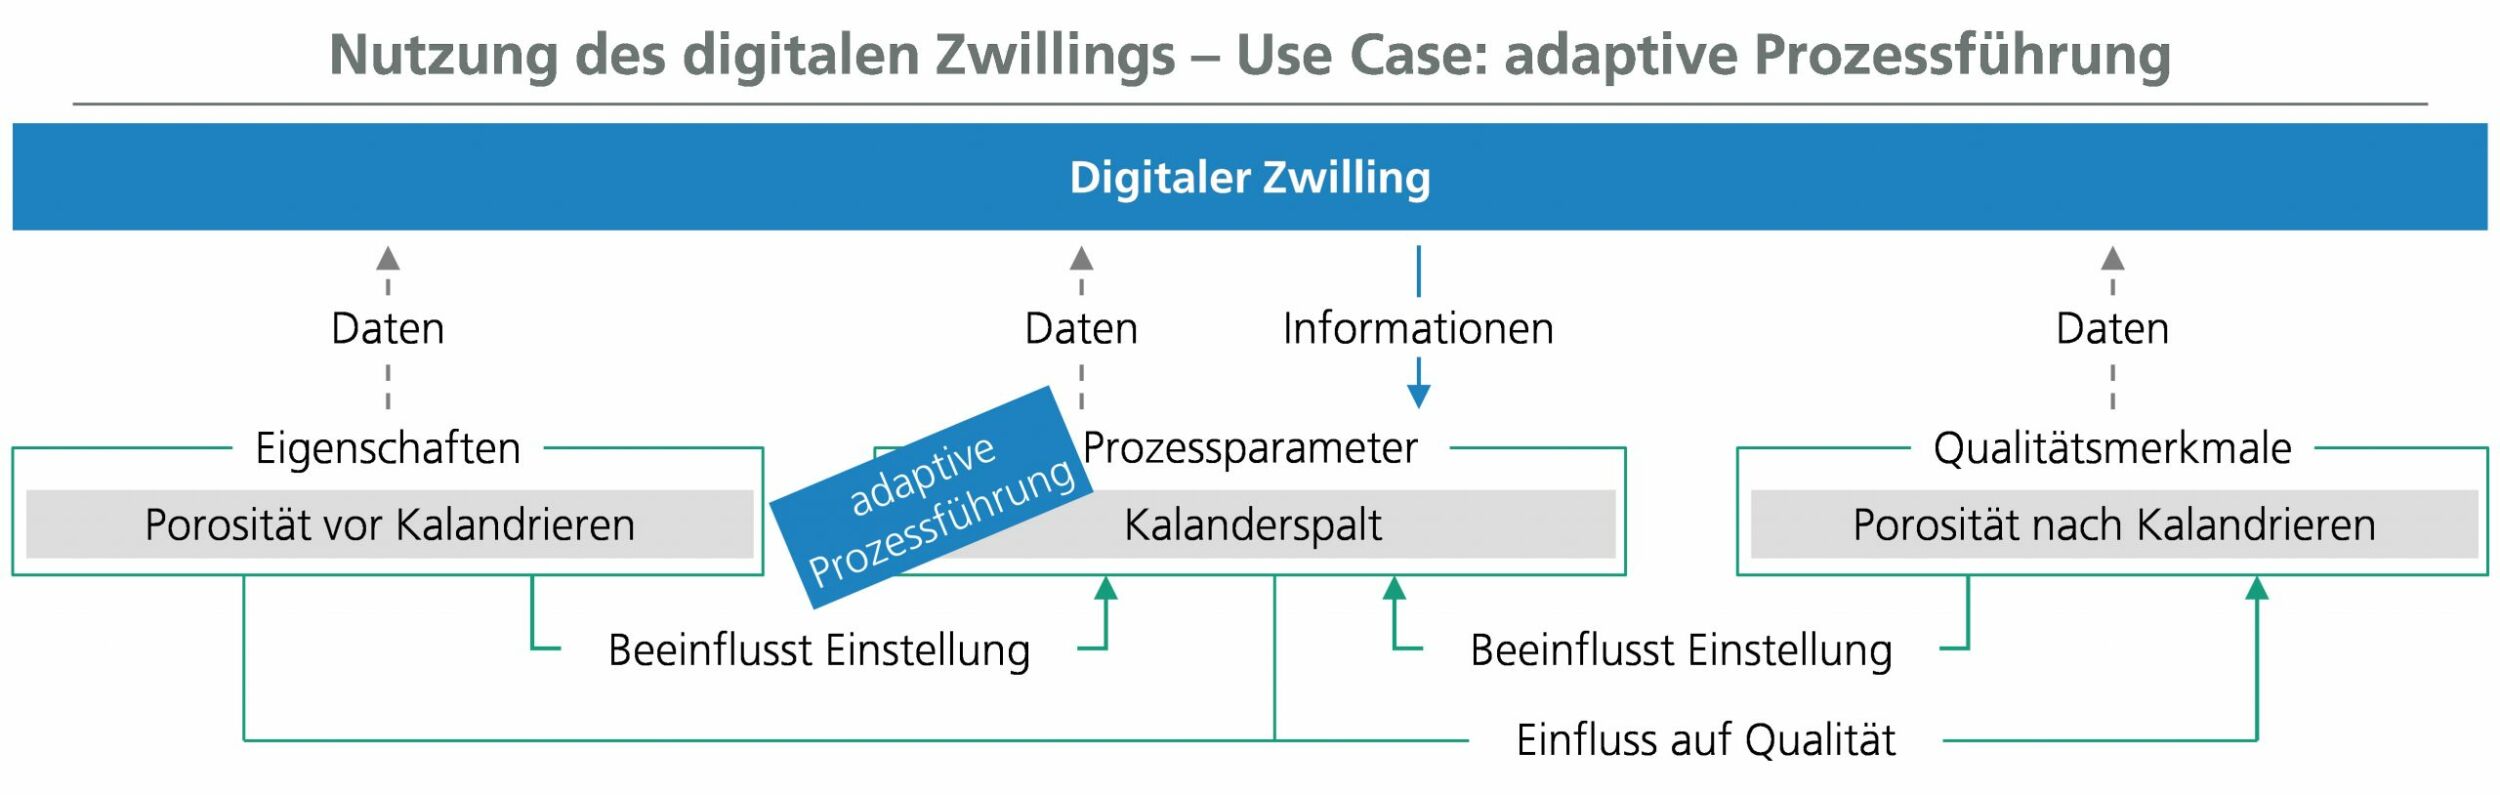 Der digitale Zwilling kann in Use Cases von deskriptiver bis hin zu präskriptiver Analytik realisiert werden.(Bild: Fraunhofer-Institut für Produktionstechnologie IPT)